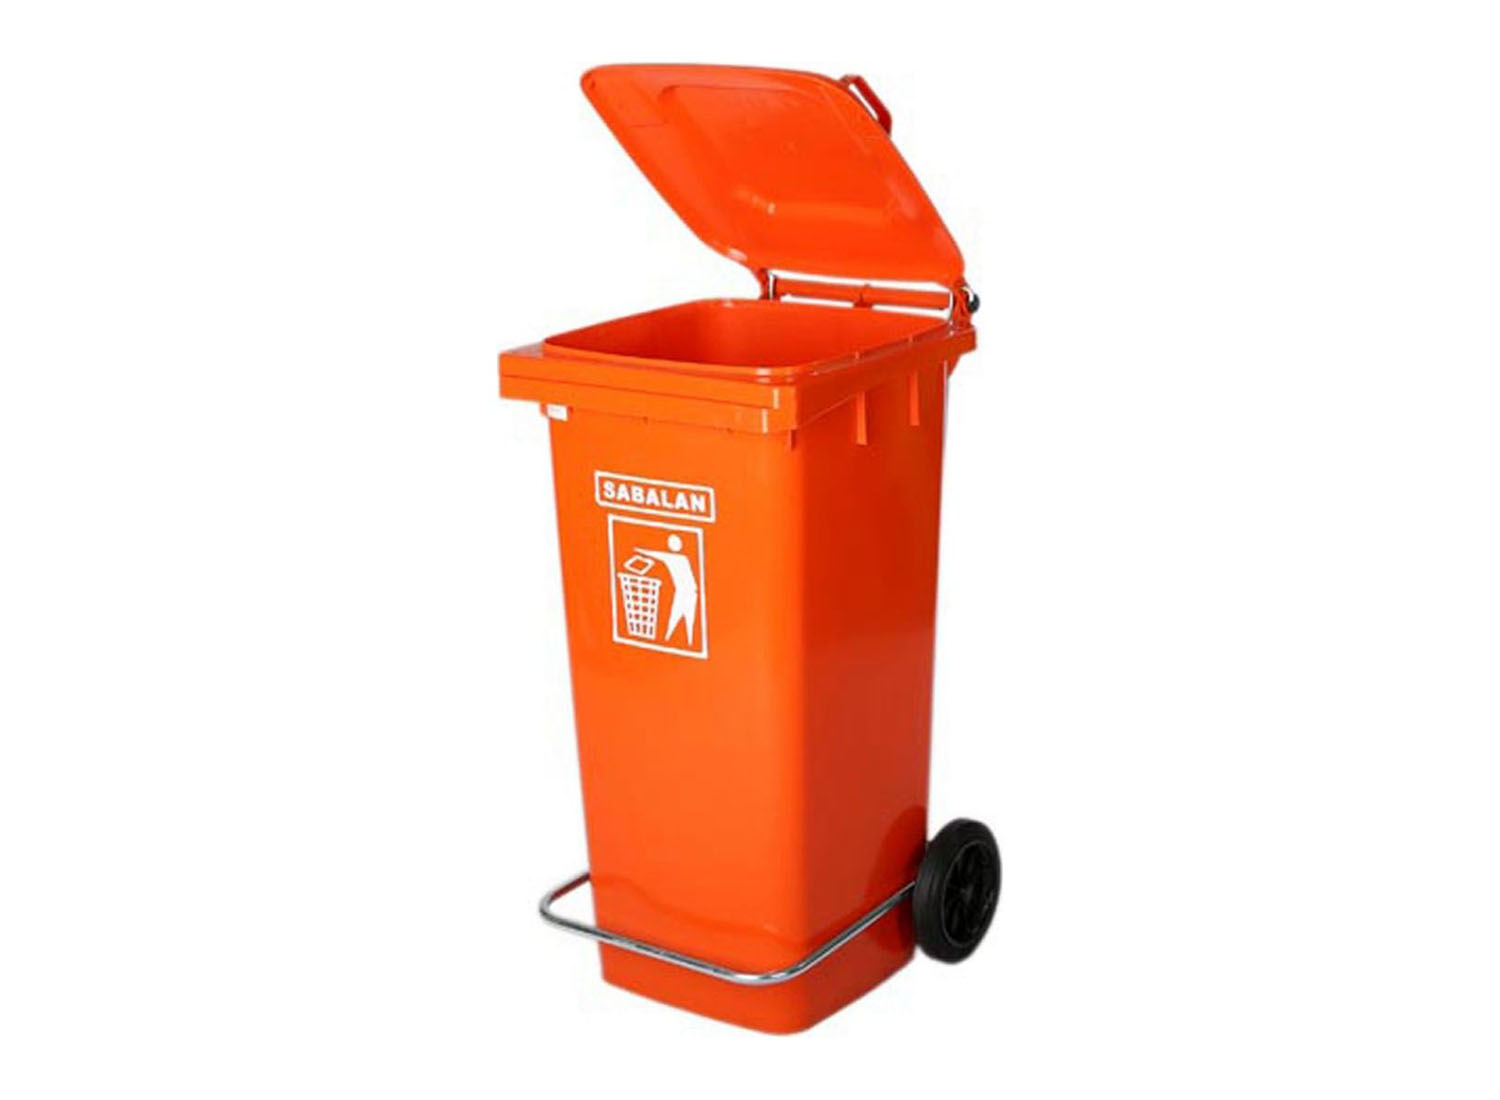 سطل زباله چرخ دار و پدال دار 120 و 240 لیتری برند سبلان